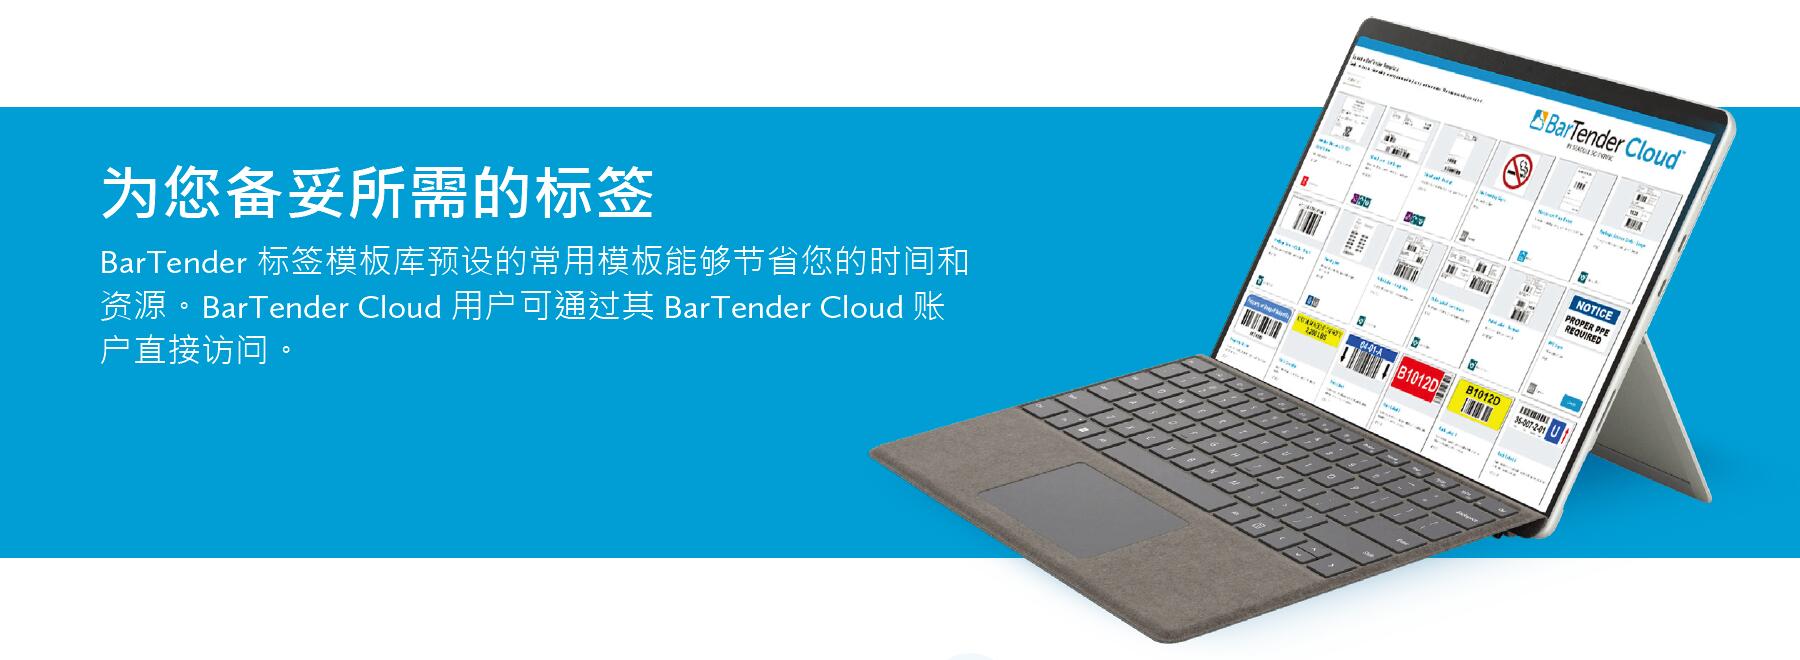 BarTender Cloud10.jpg